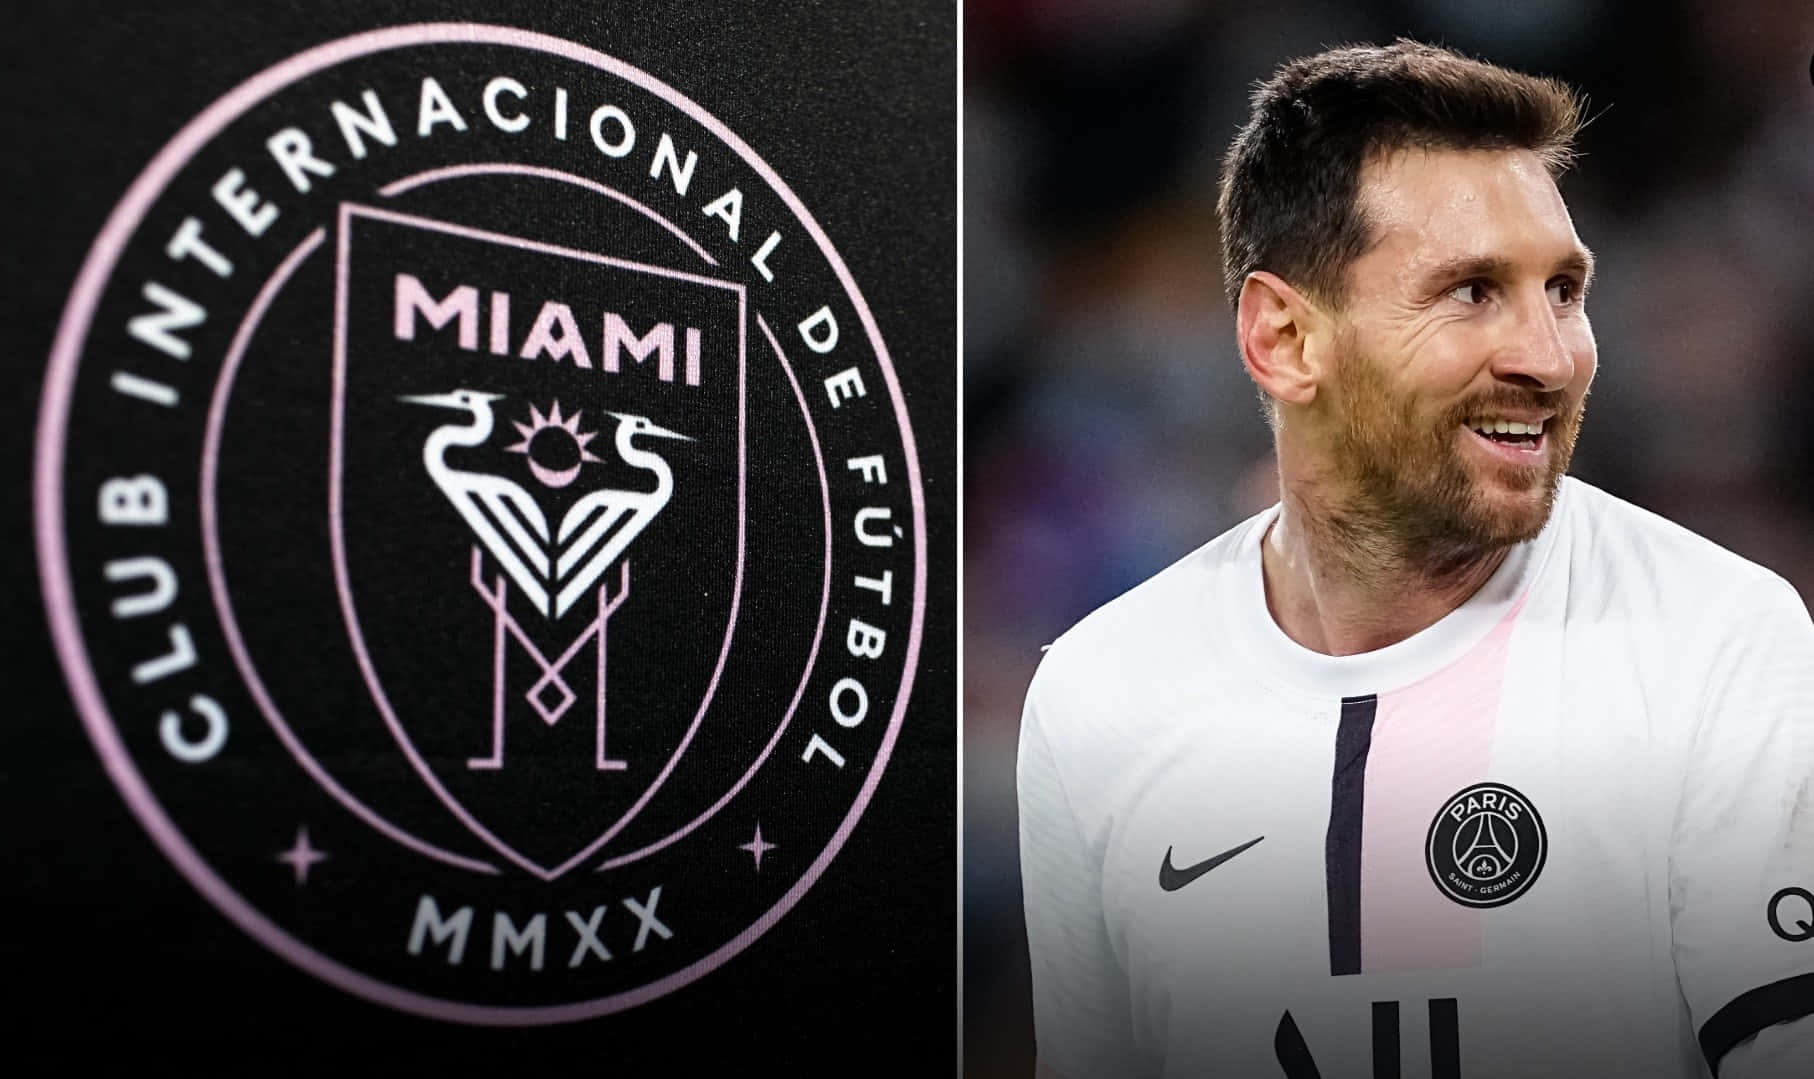 Messiand Inter Miami Crest Wallpaper